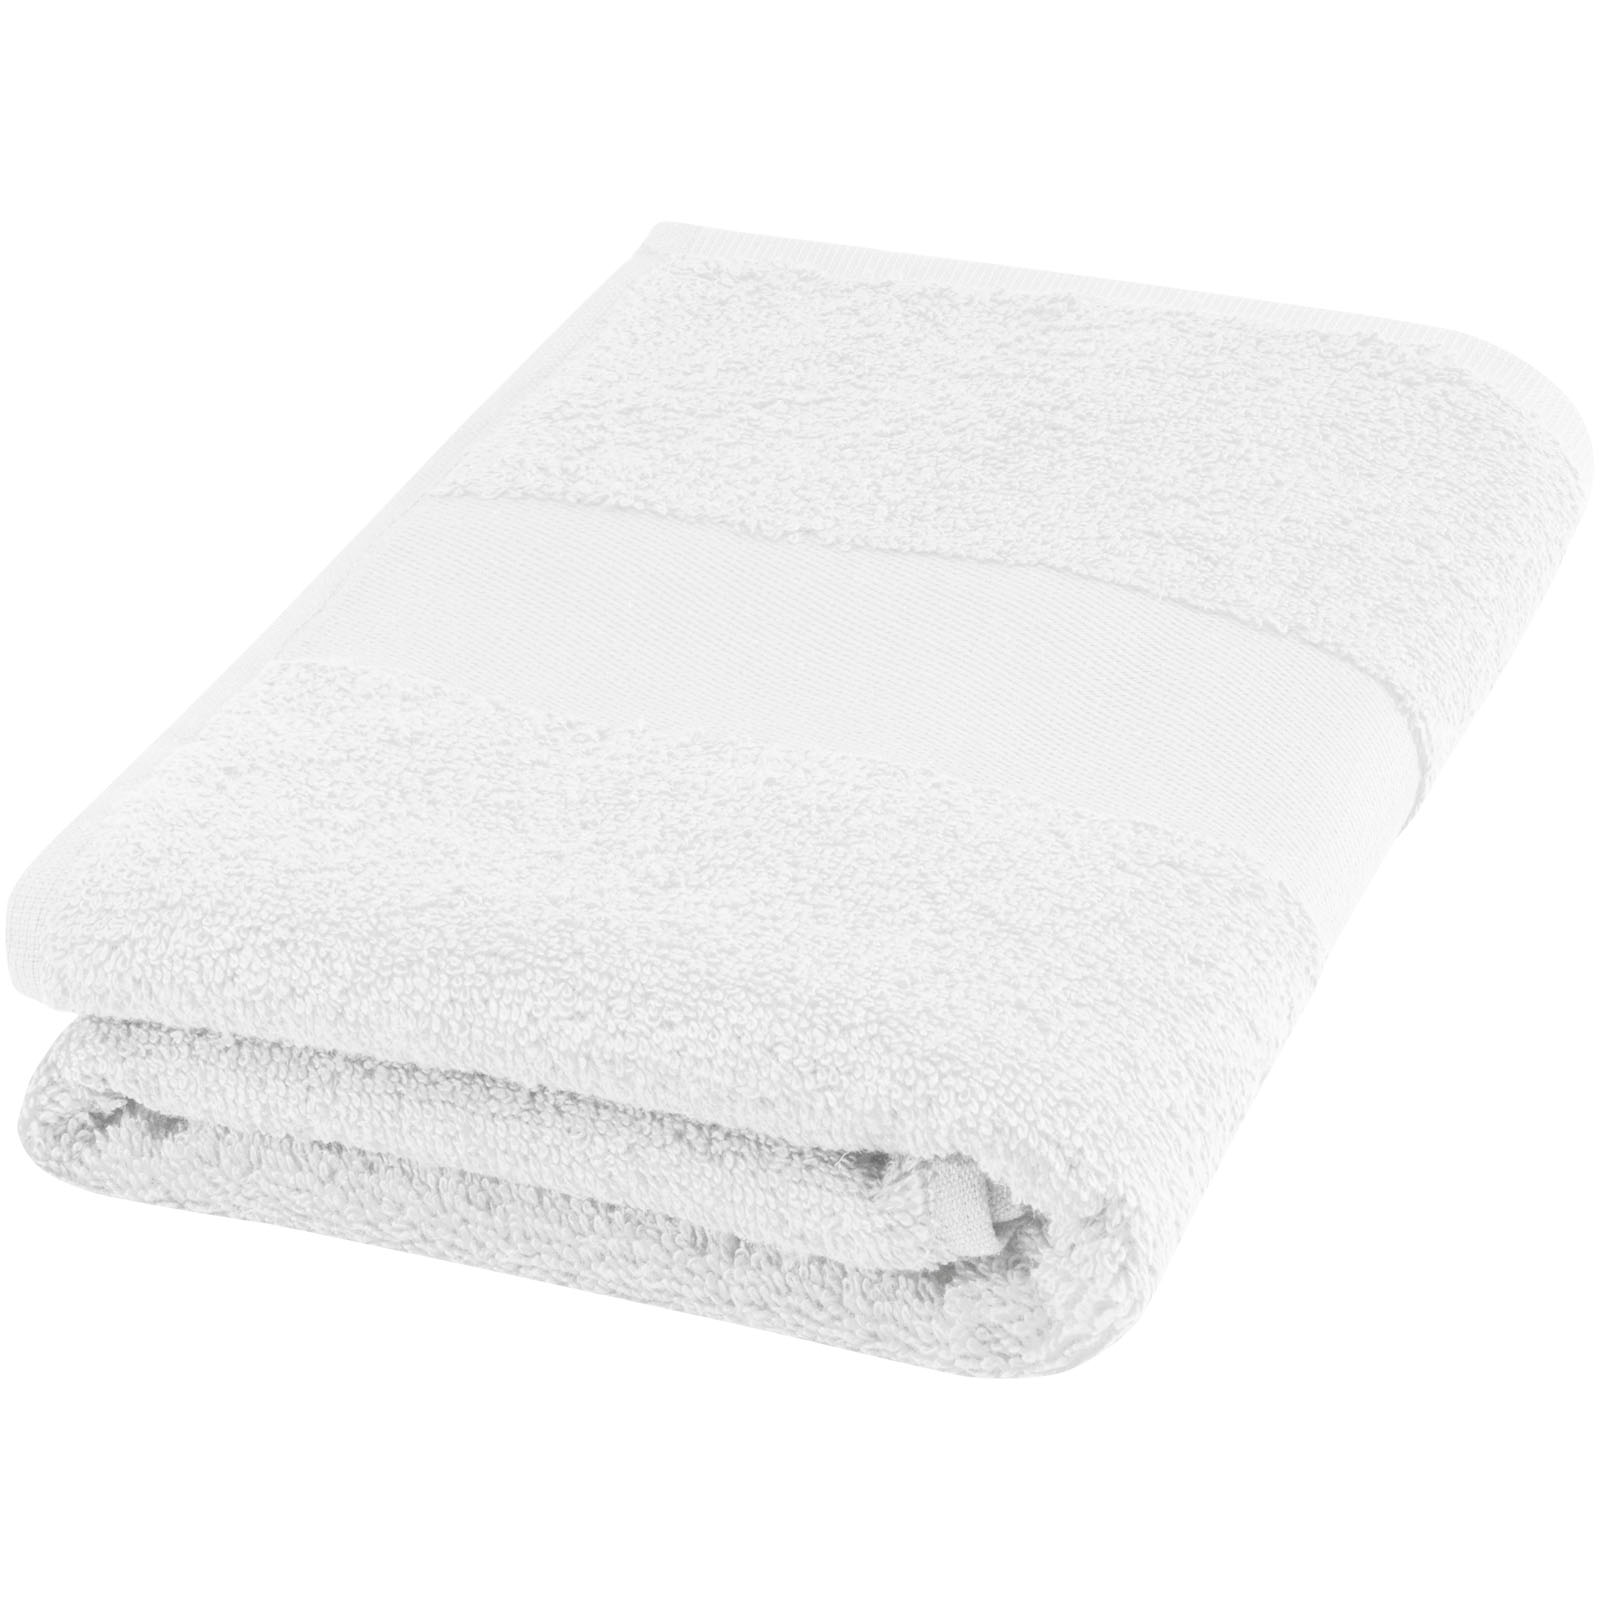 Towels - Charlotte 450 g/m² cotton towel 50x100 cm